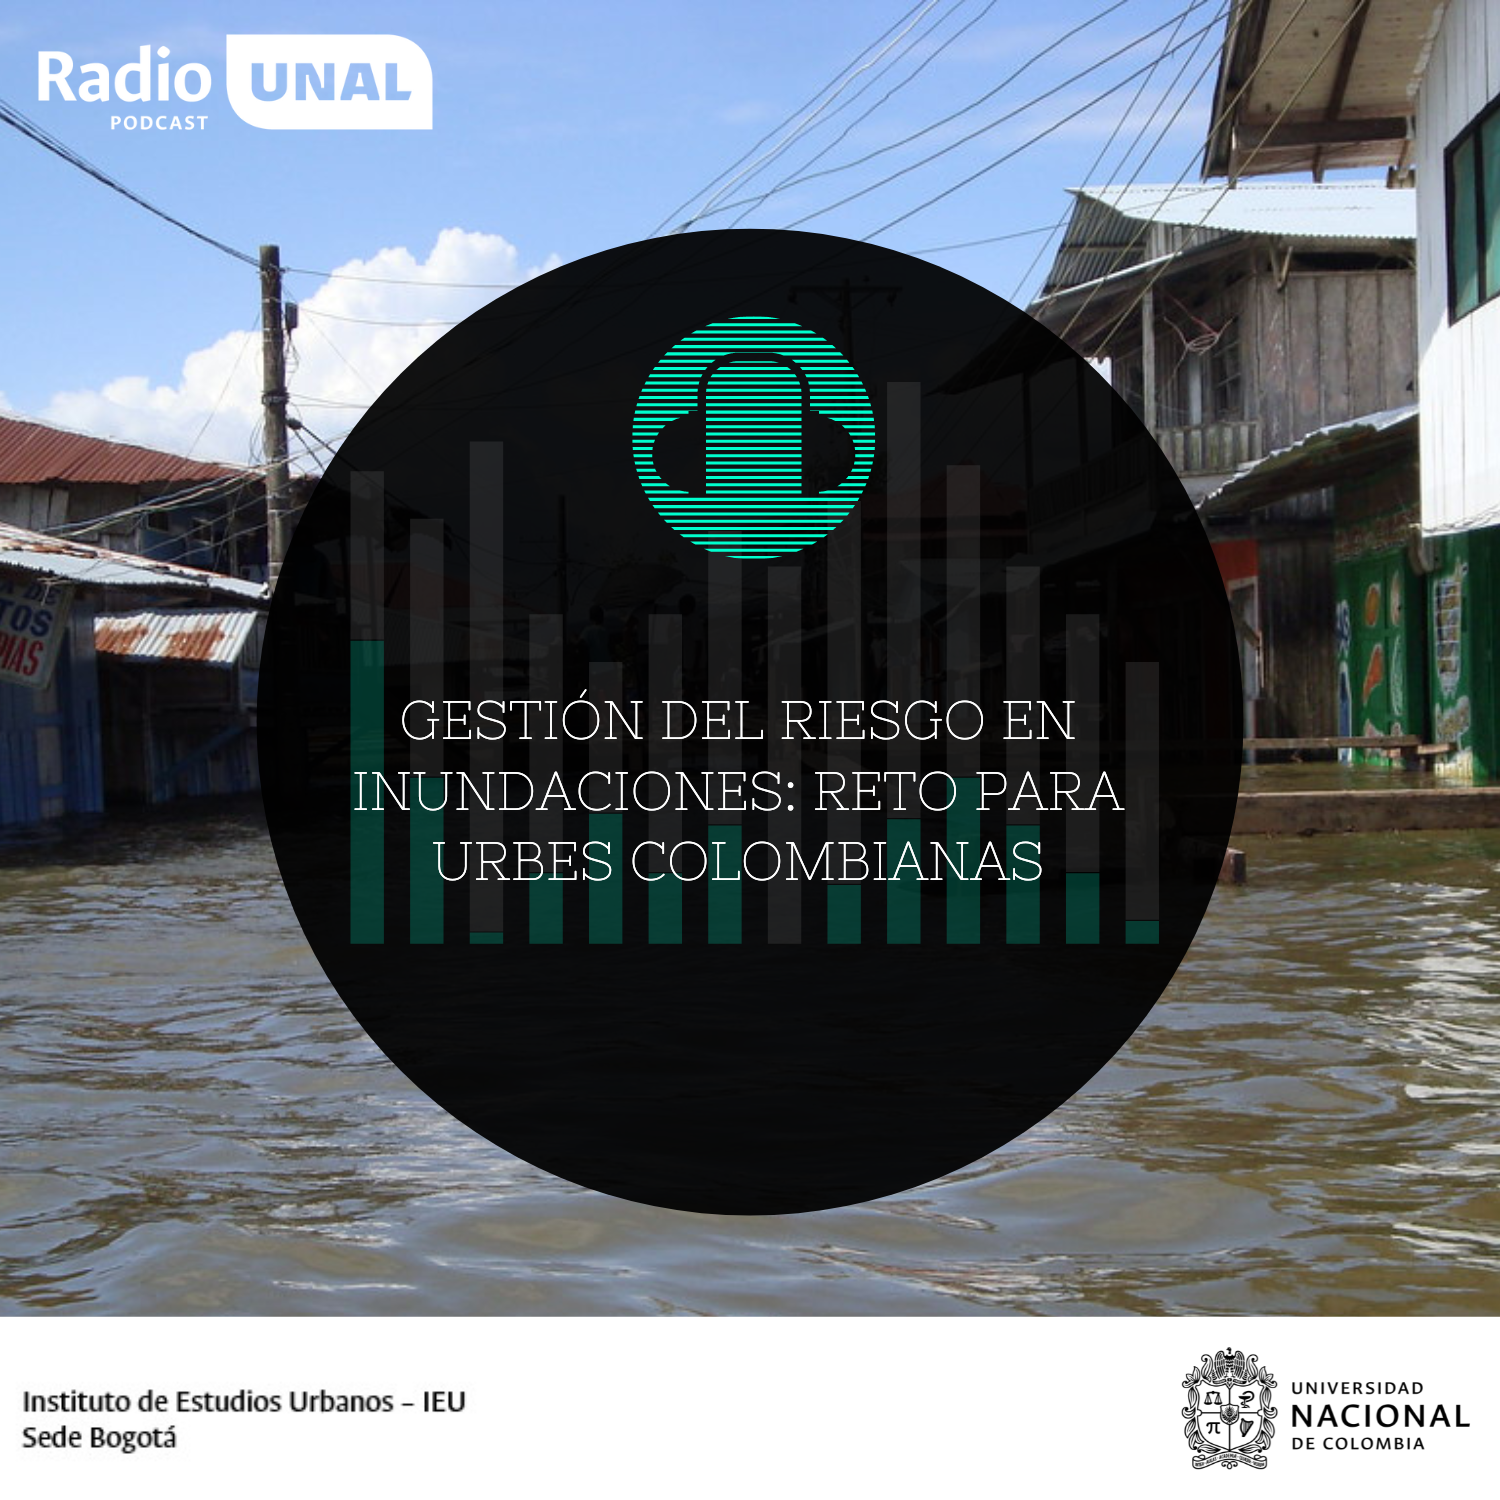 #PodcastRadioUNAL Gestión del riesgo en inundaciones: reto para urbes colombianas